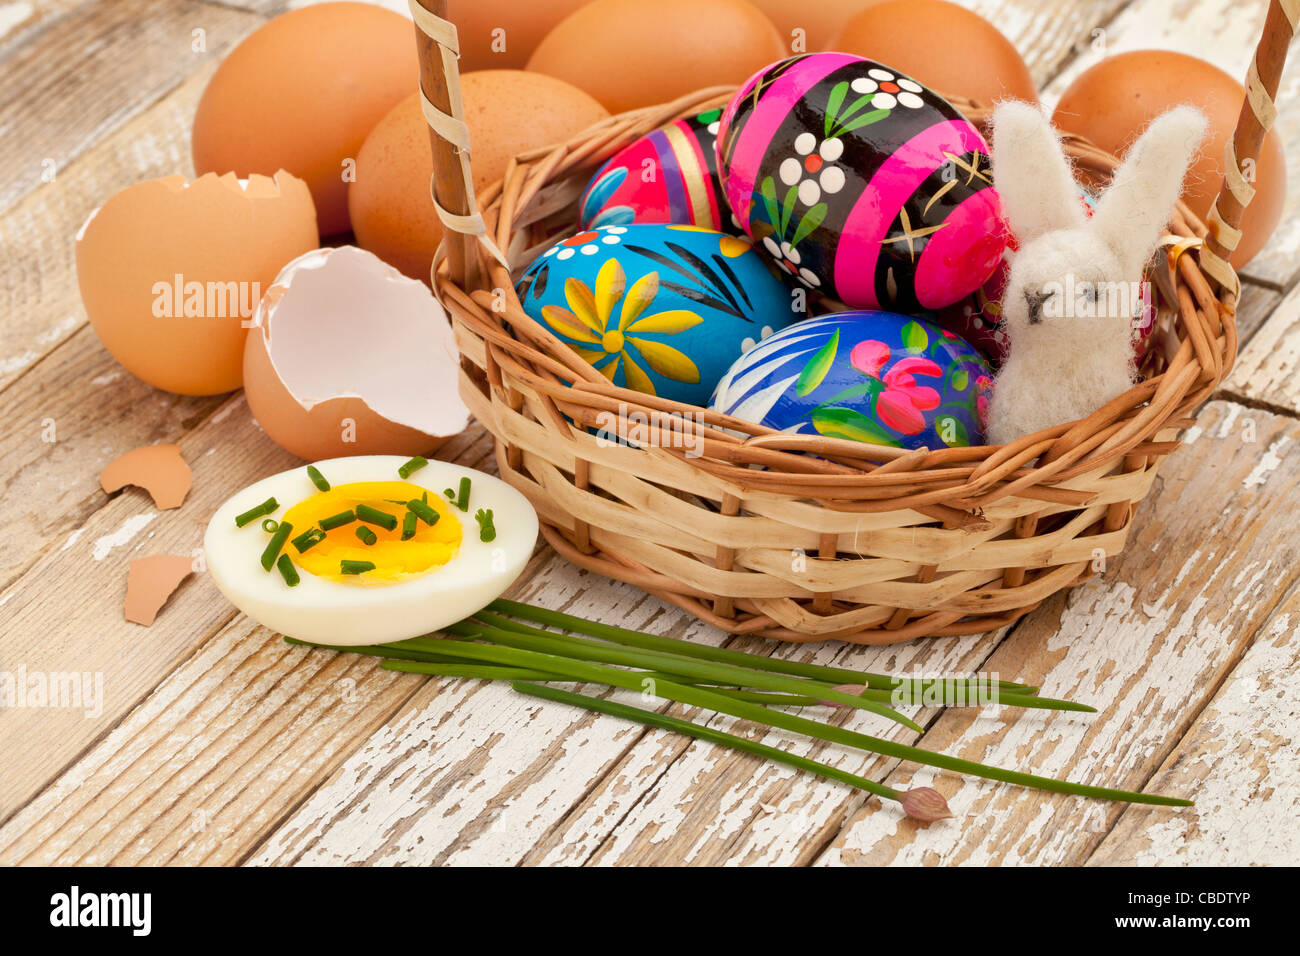 Décoration de Pâques - Oeufs de Pâques peints, les oeufs de poule avec ciboulette et vert lapin en laine dans un panier Banque D'Images